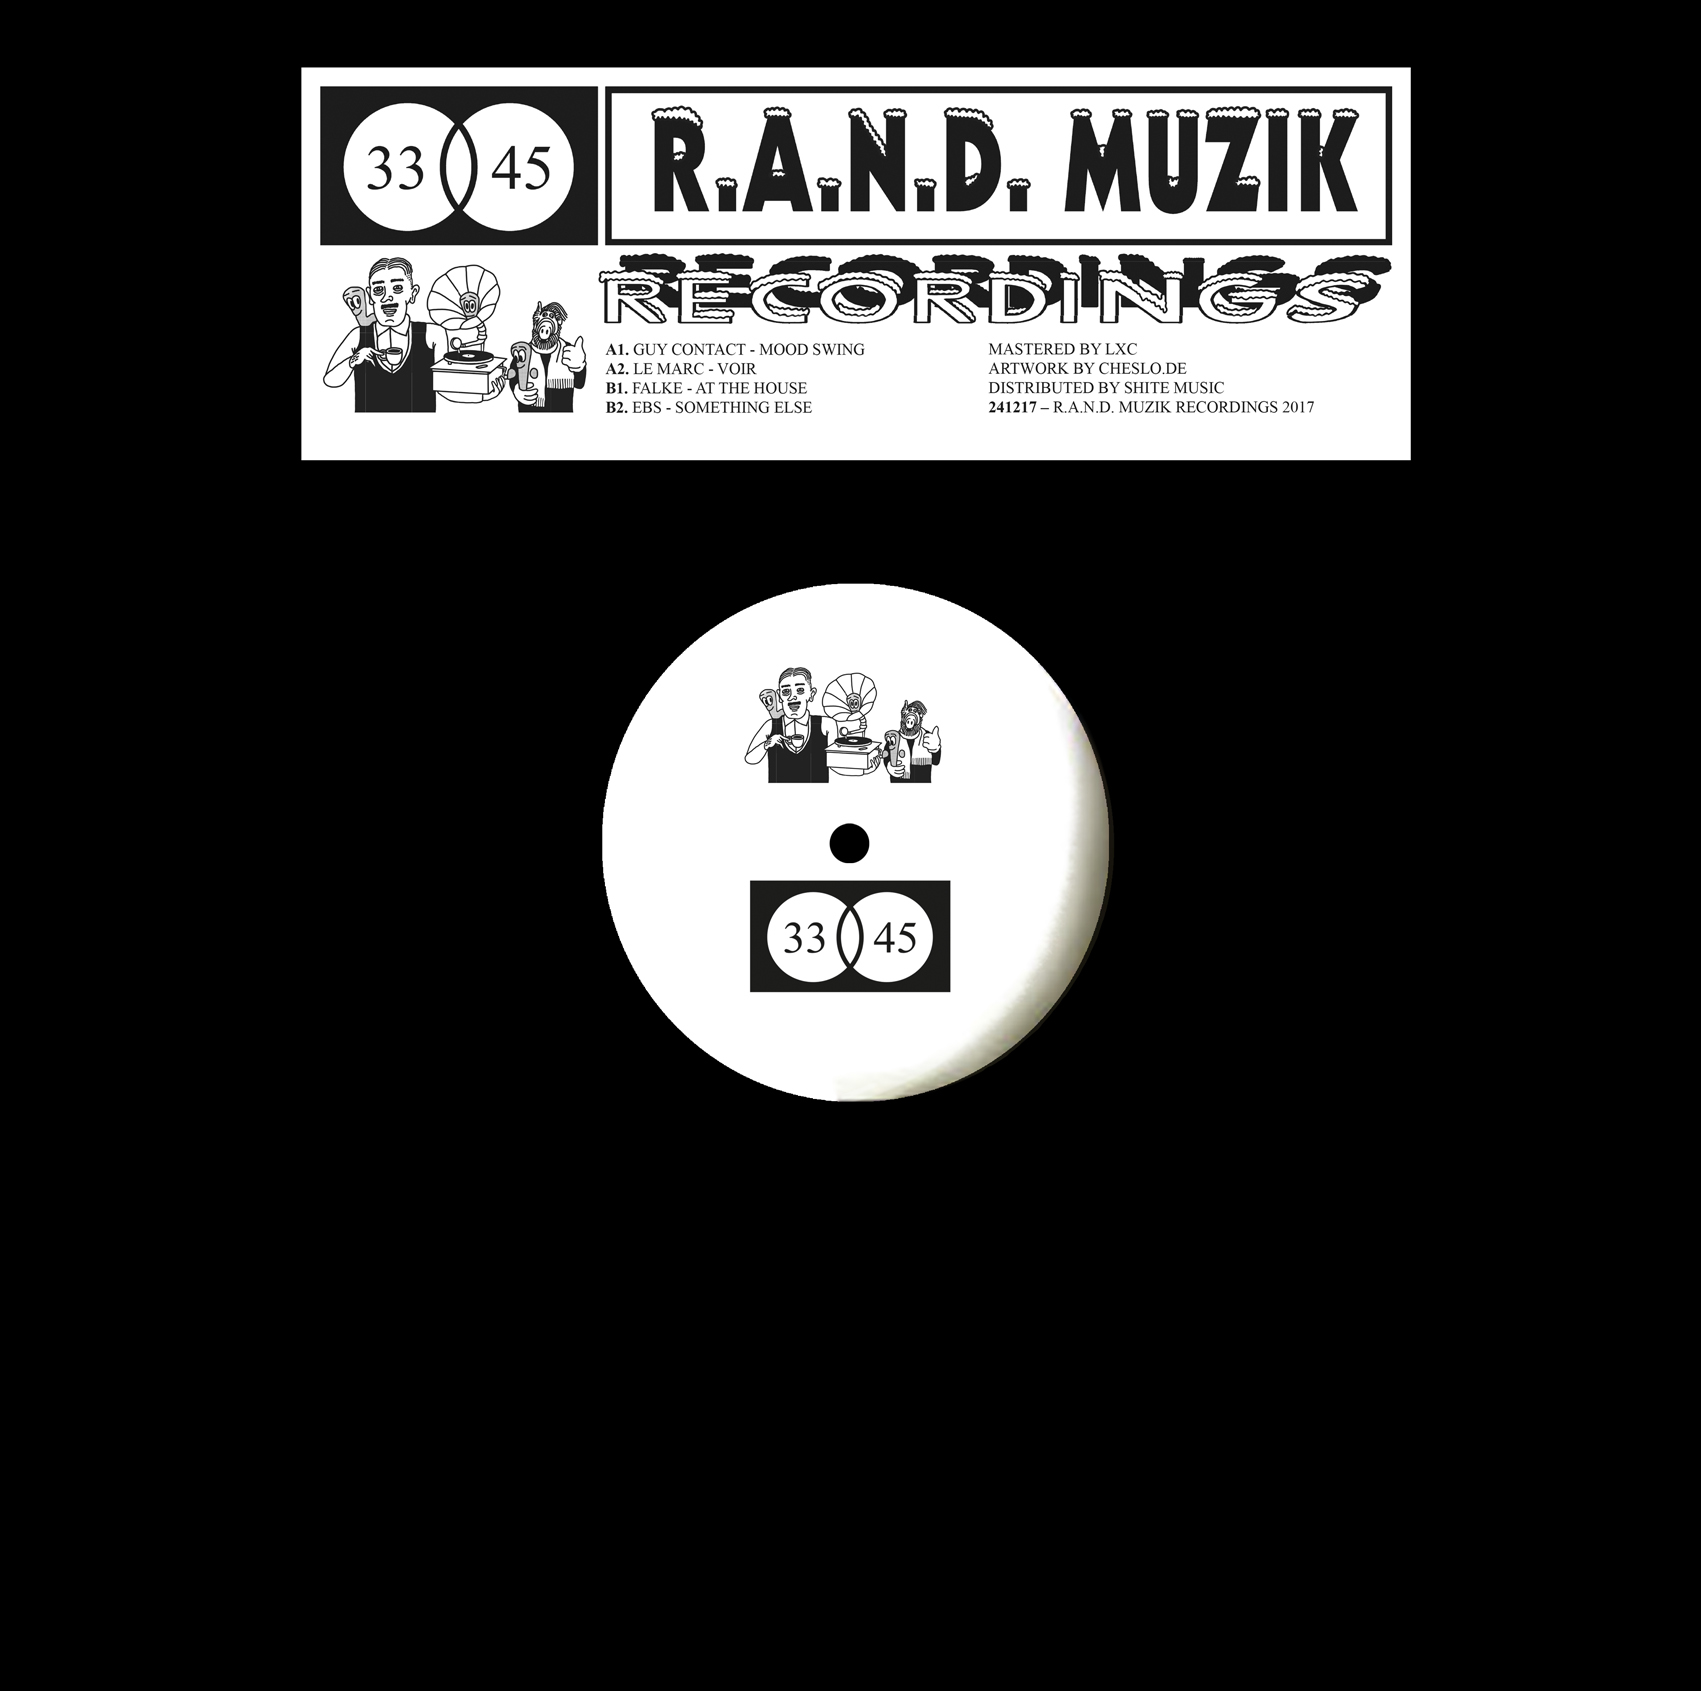 Bild R.A.N.D. MUZIK RECORDINGS 